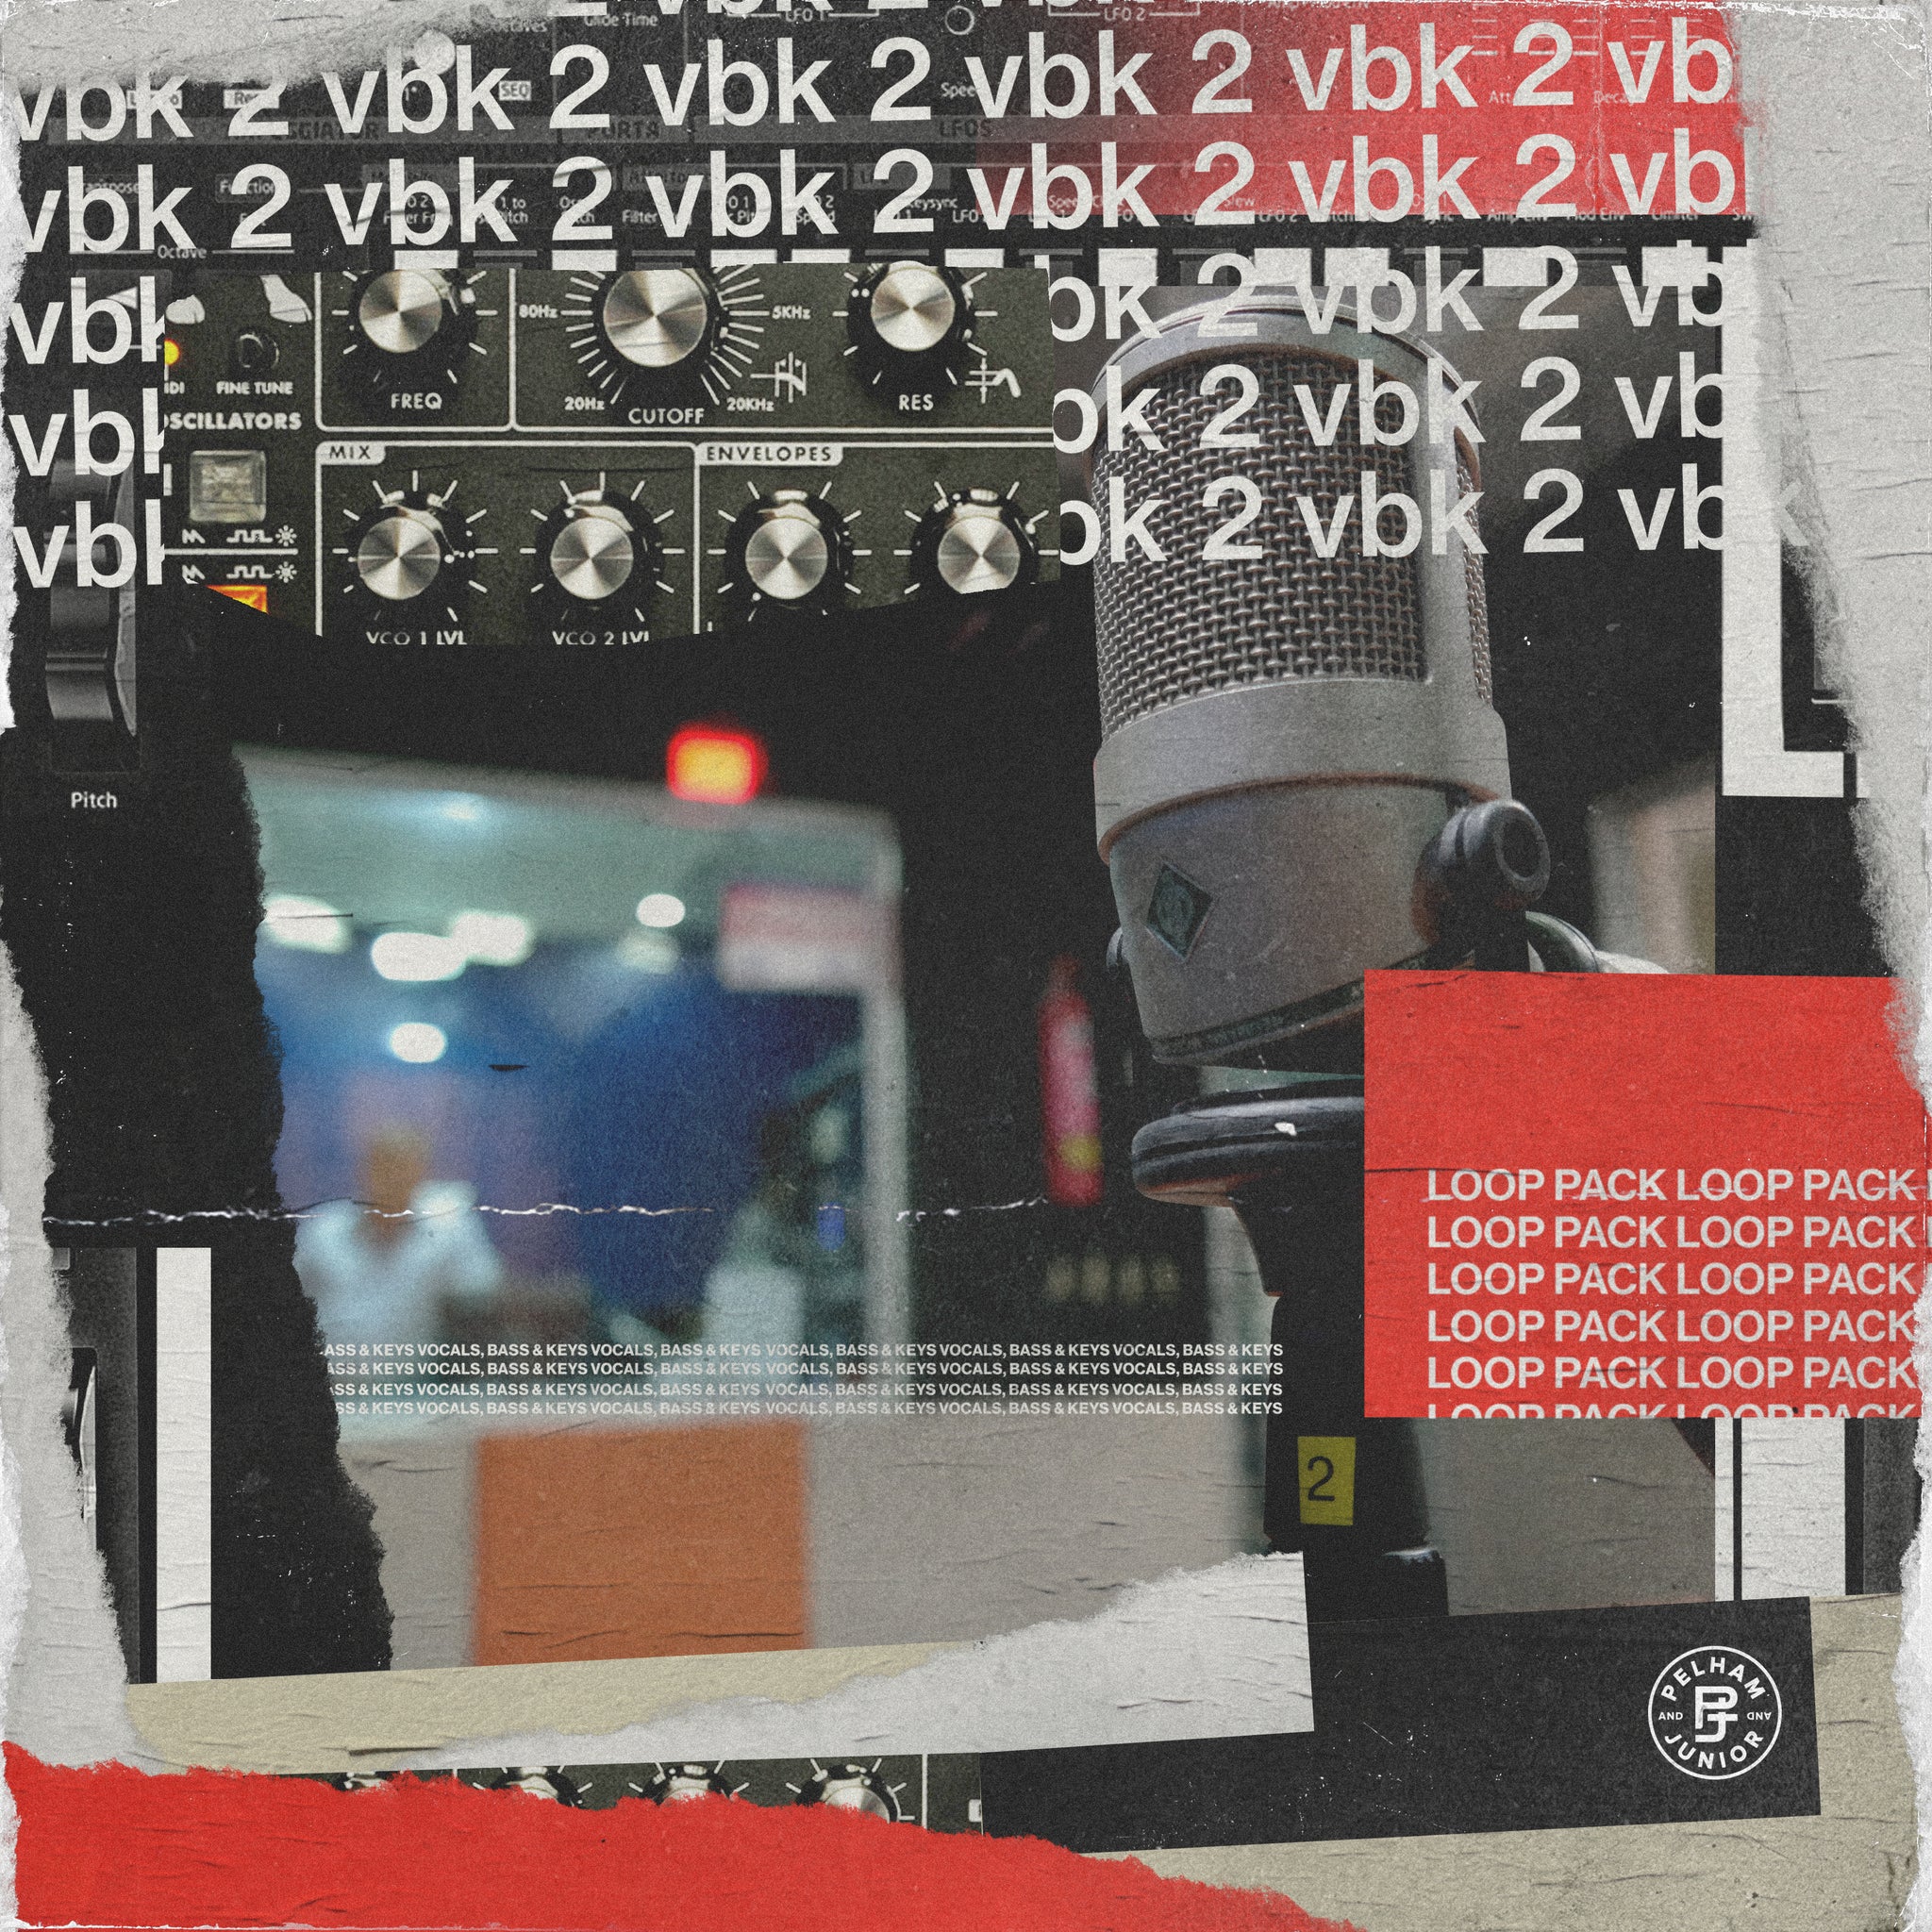 VBK 2 - Loop Pack